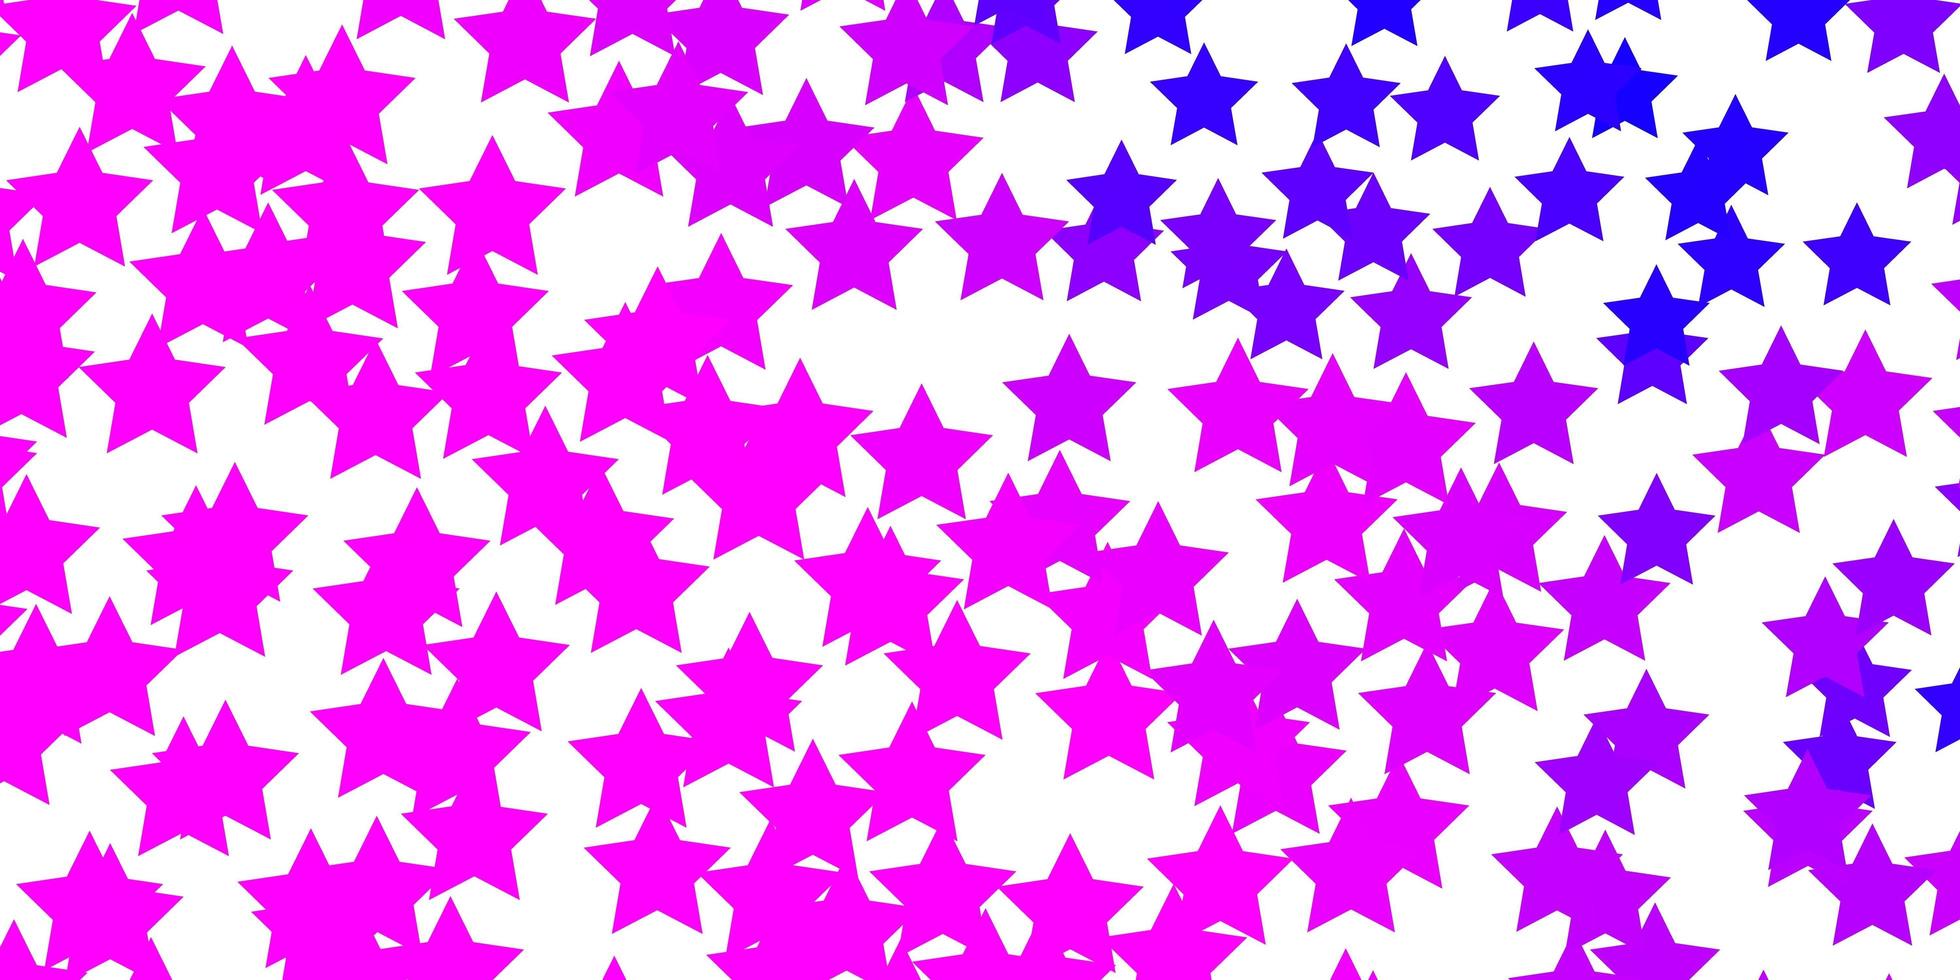 lichtpaarse, roze vectorachtergrond met kleine en grote sterren. glanzende kleurrijke illustratie met kleine en grote sterren. patroon voor websites, bestemmingspagina's. vector